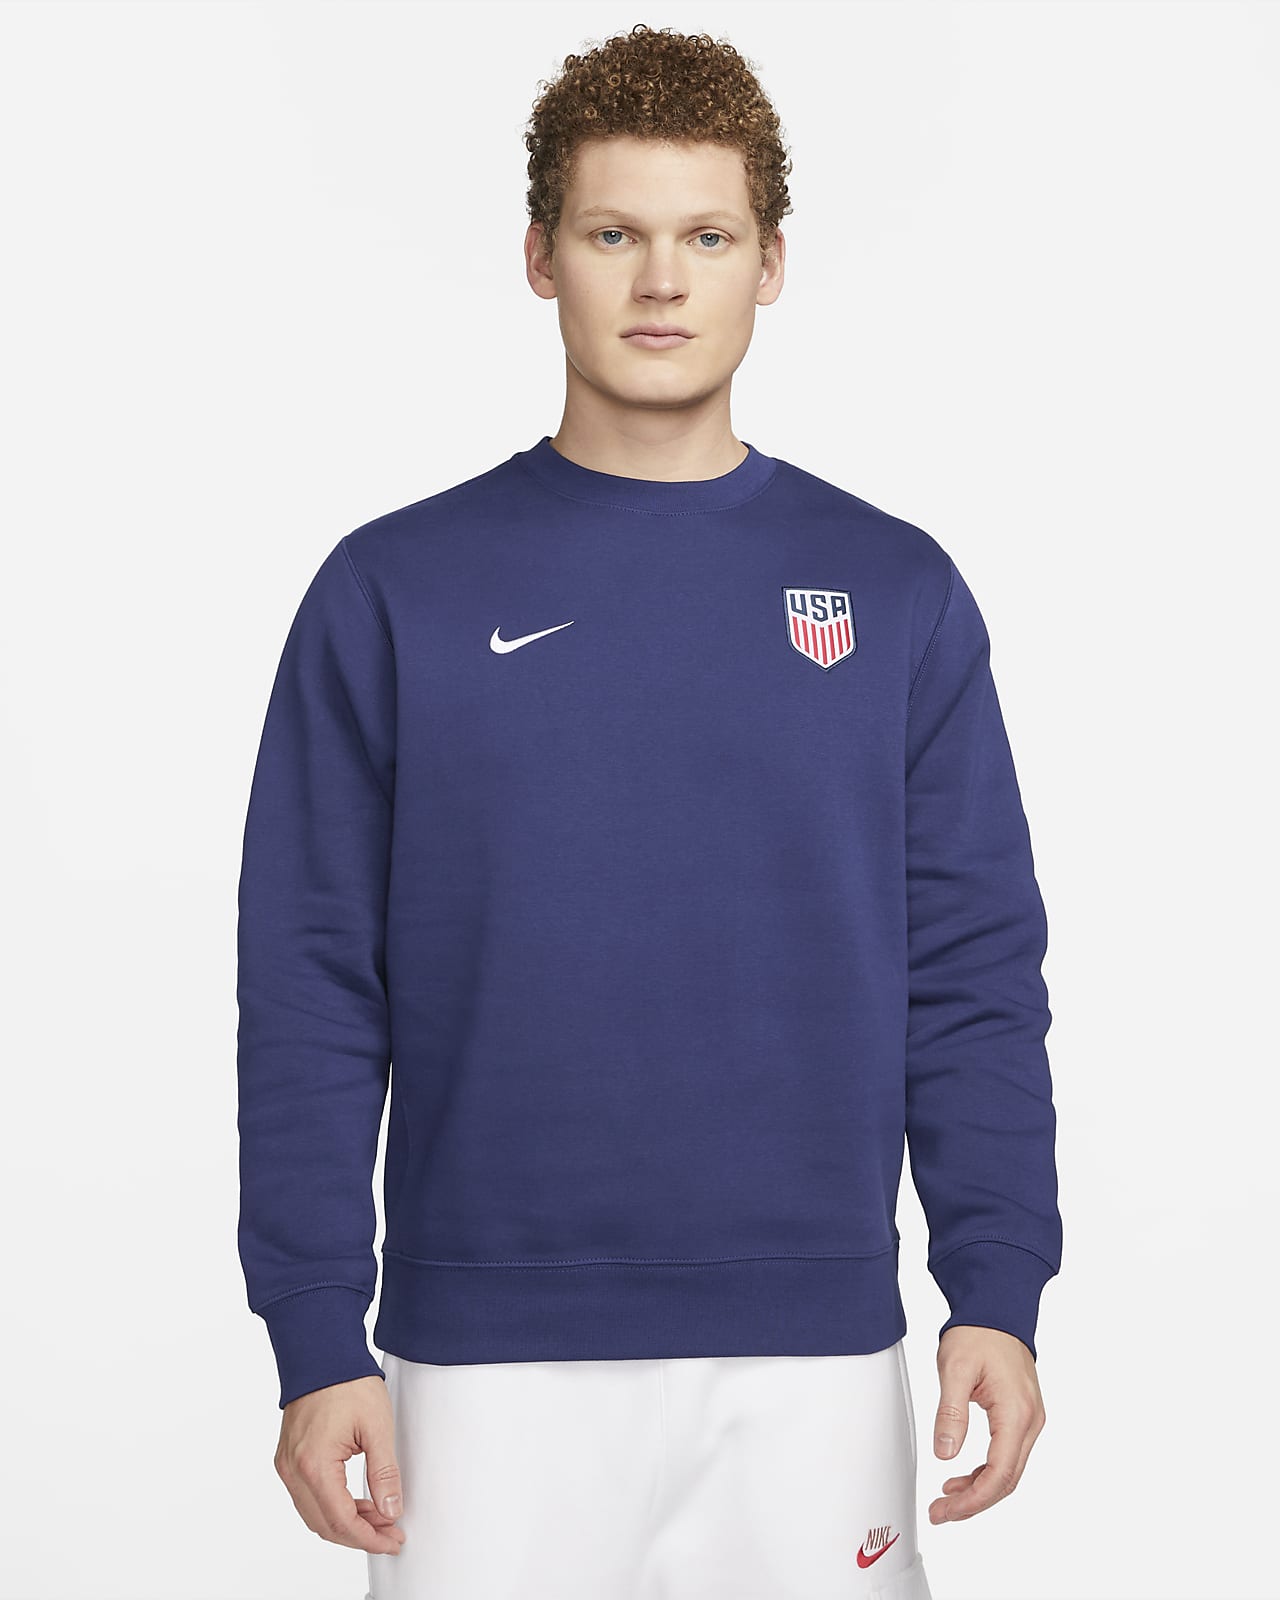 U.S. Fleece Men's Nike Crew-Neck Sweatshirt. Nike.com